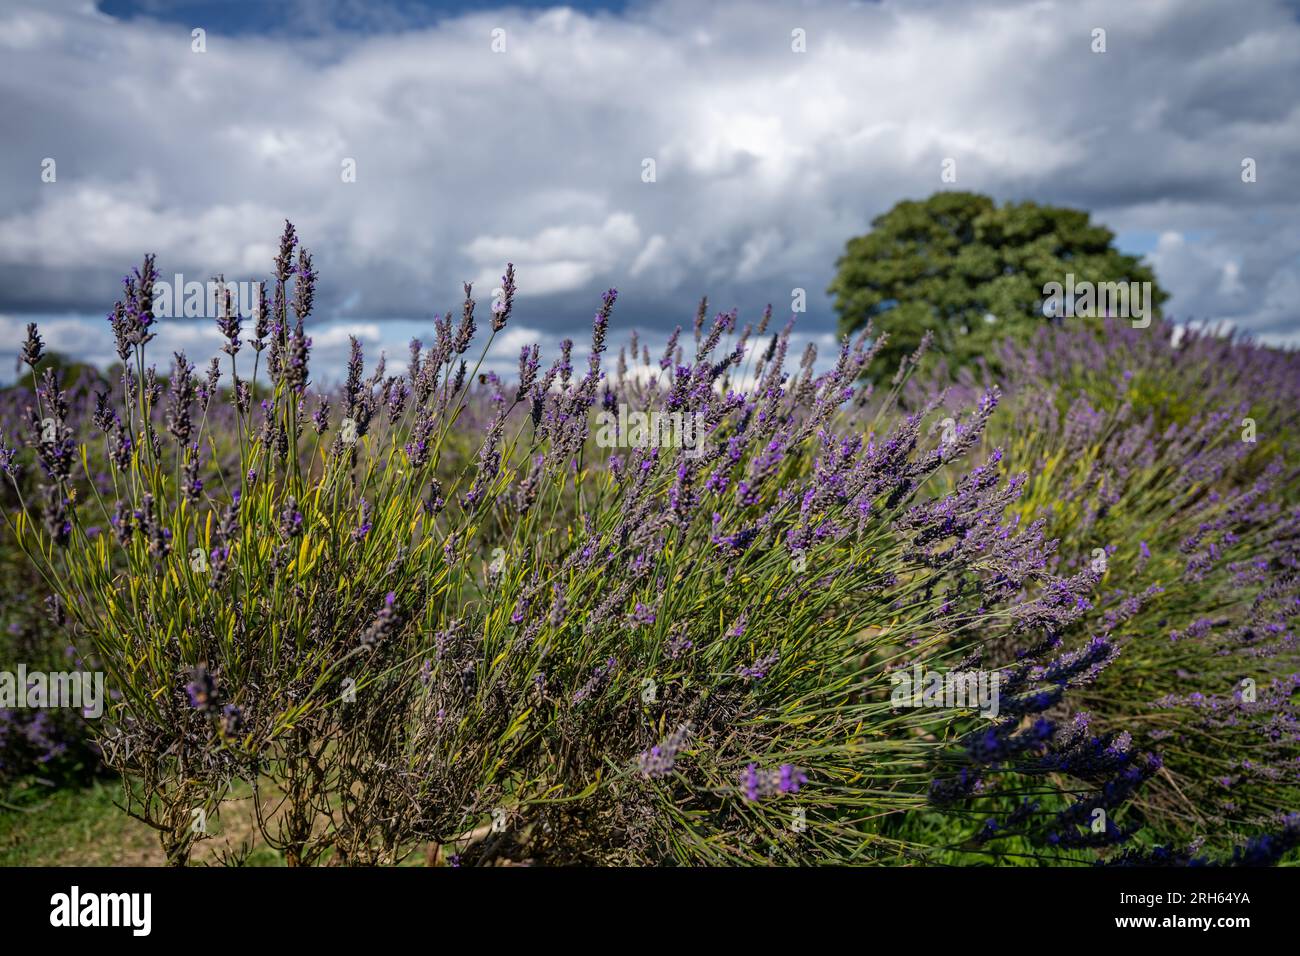 Lavendelpflanzen auf einem Feld. Violette Blumen mit Himmel, weiße Wolken und ein Baum. Querformat. Stockfoto